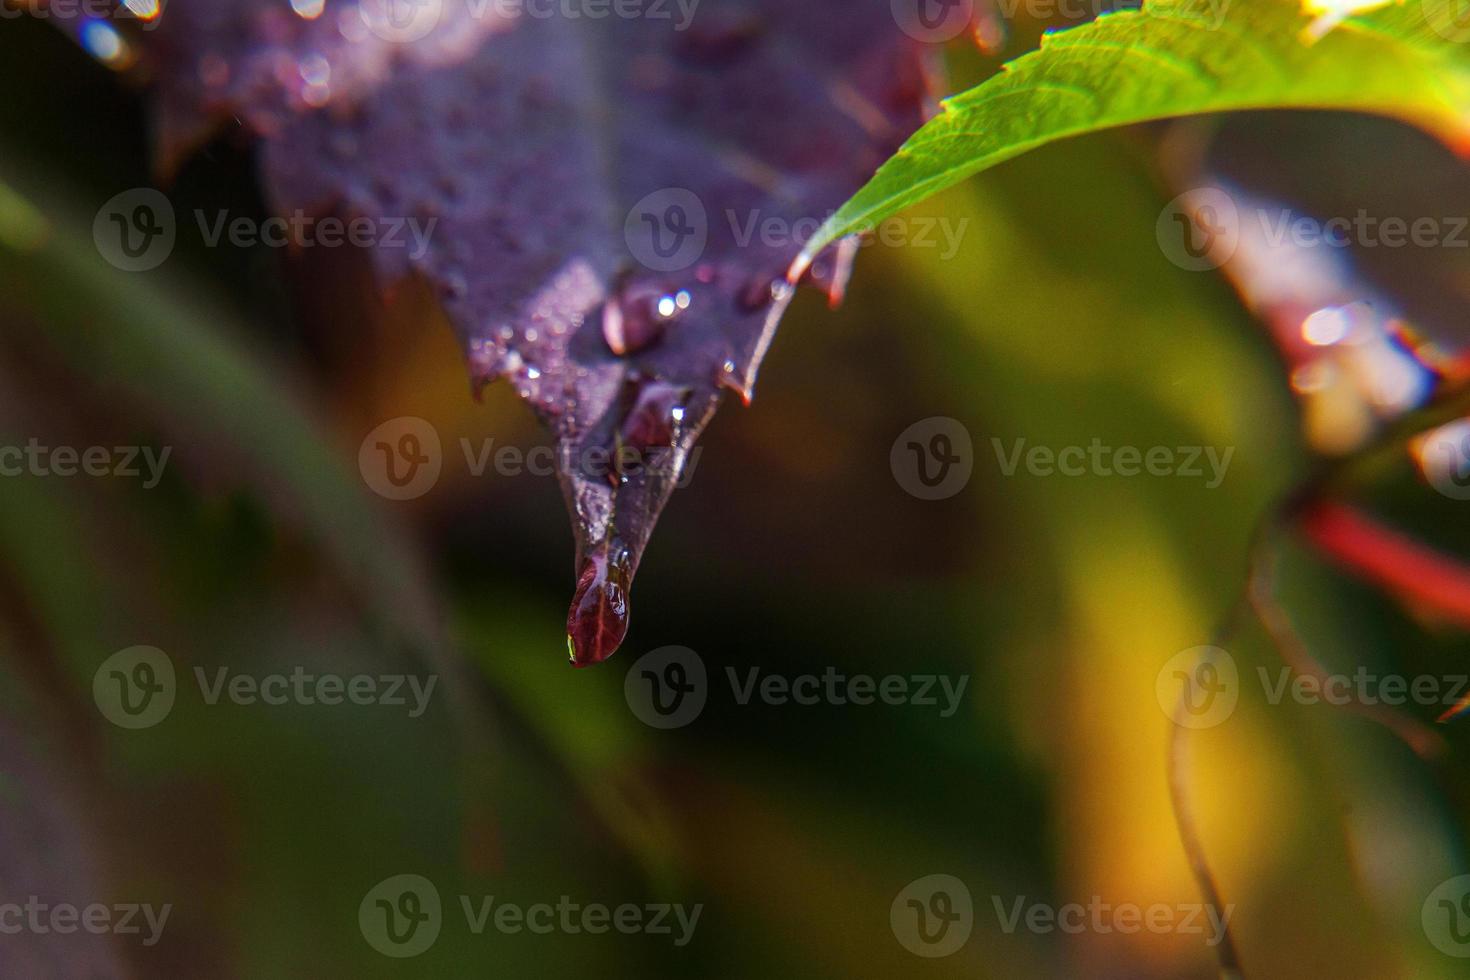 industria vitivinícola. gotas de agua de lluvia en hojas de uva verde en viñedo foto